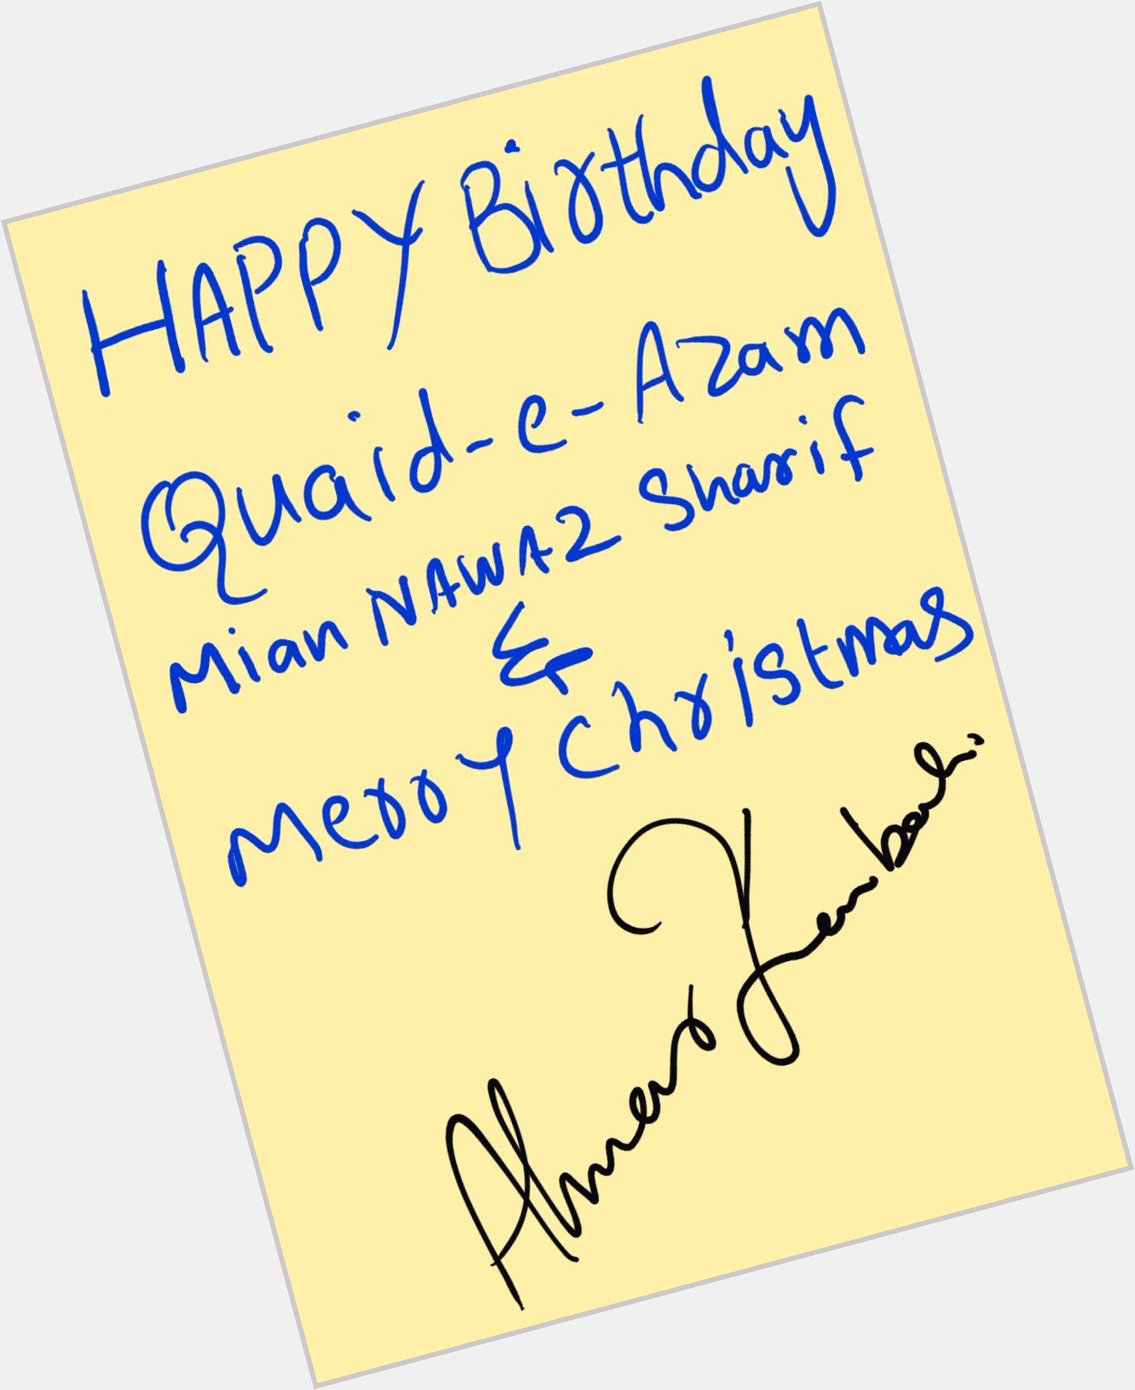 A new style to wish Happy Birthday to Quaid.e.azam
Mian Nawaz Sharif
And
Marry christmas 